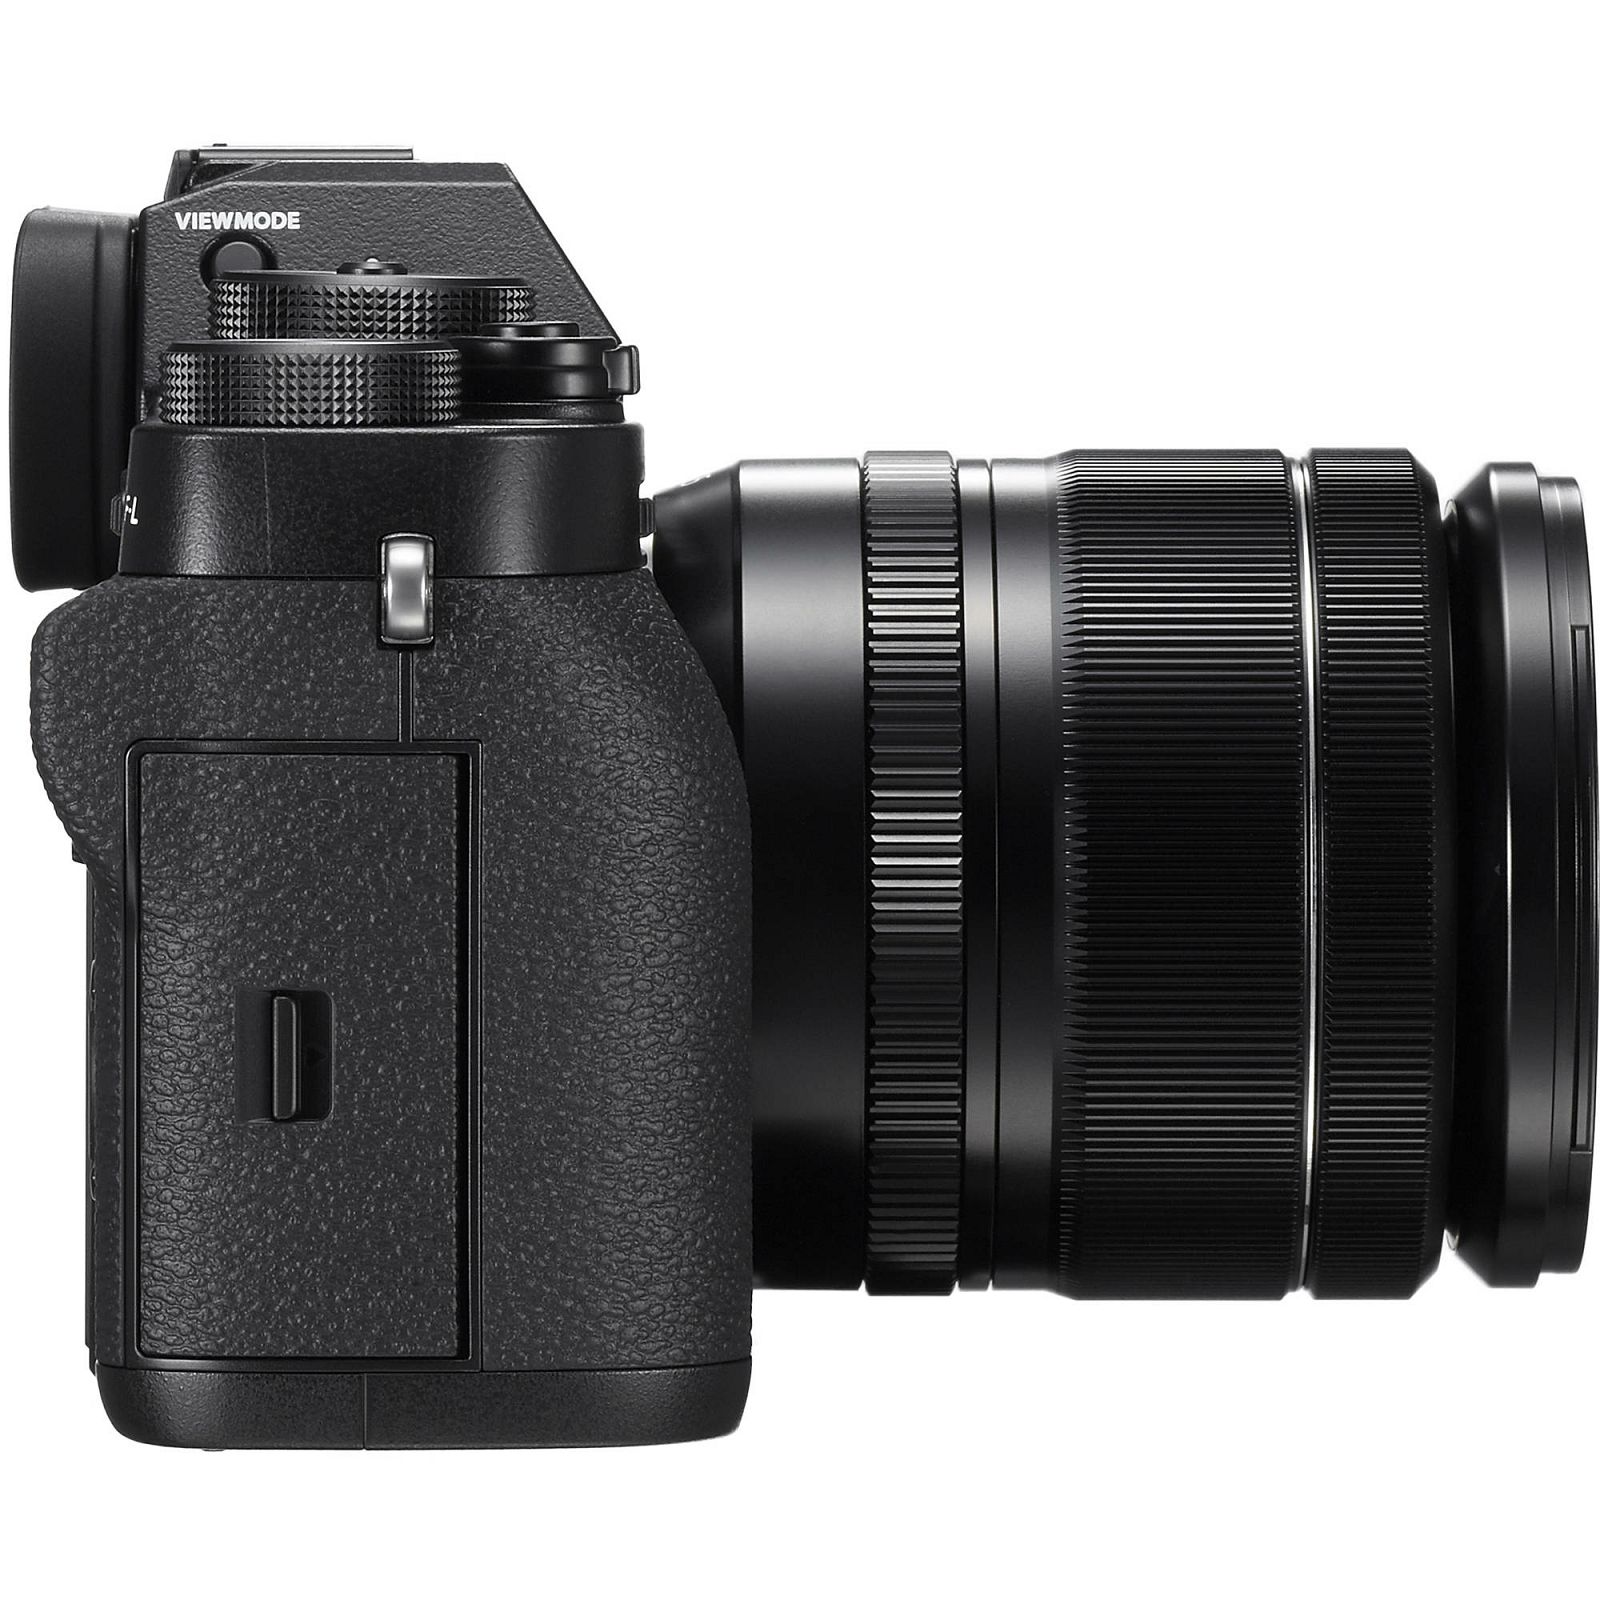 Fujifilm X-T2 + 18-55 f/2.8-4 R LM OIS Kit Mirrorless Digital Camera Body + lens Fuji digitalni fotoaparat i objektiv 18-55mm